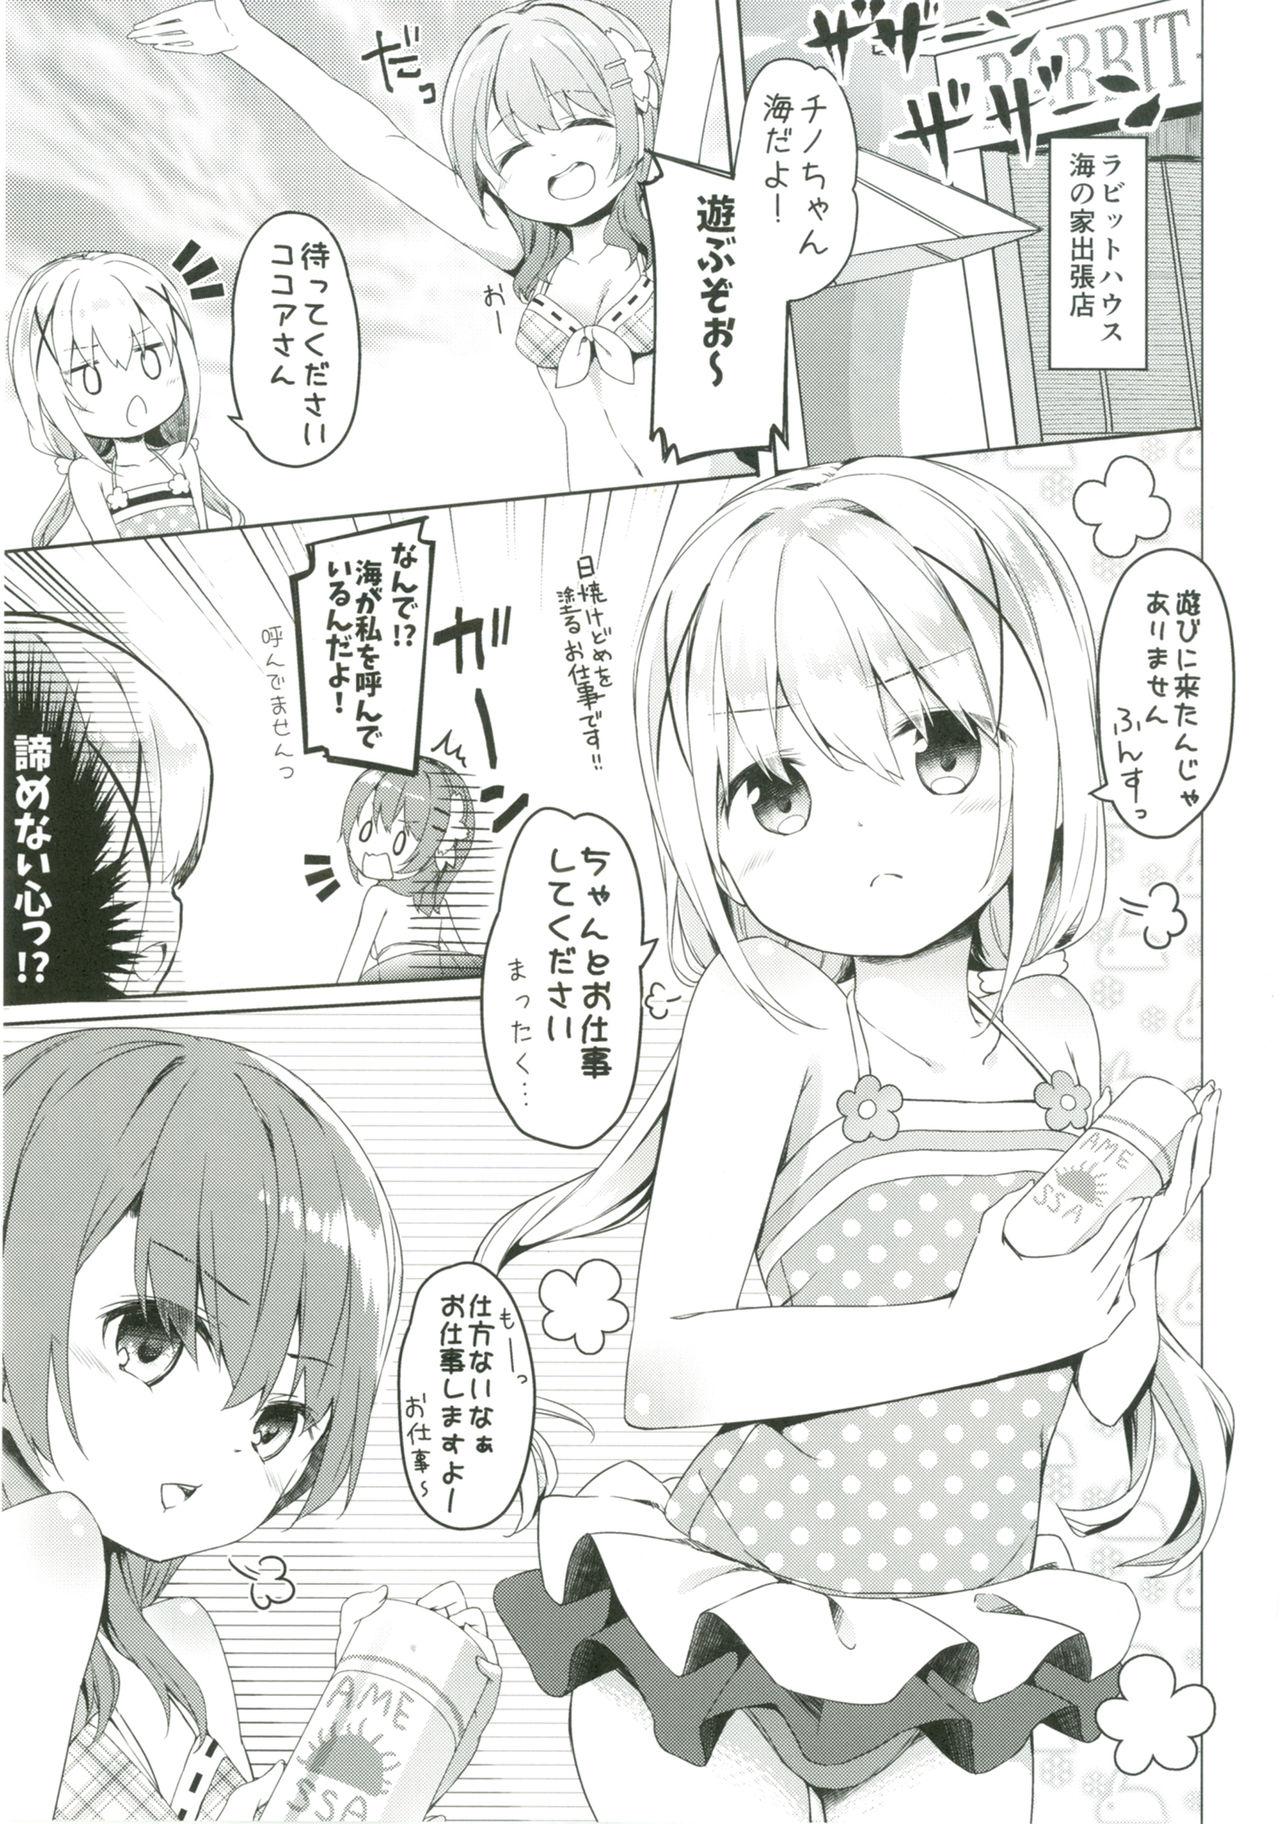 Femdom Atataka Hokkori Rabbit House - Gochuumon wa usagi desu ka Piroca - Page 4